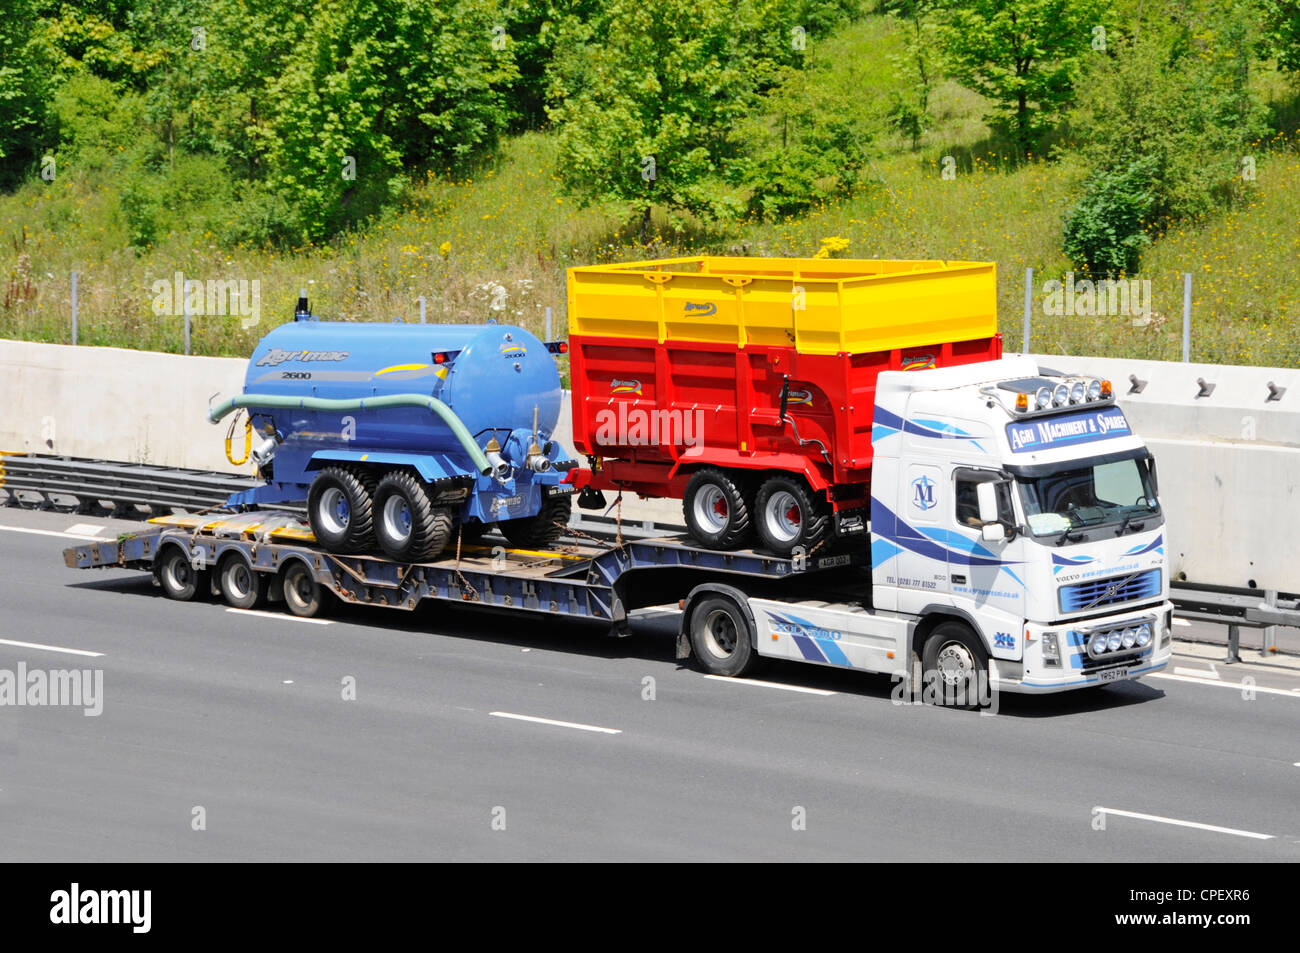 Cargador baja y nuevos equipos agrícolas Agrimac detrás de un camión Volvo Foto de stock